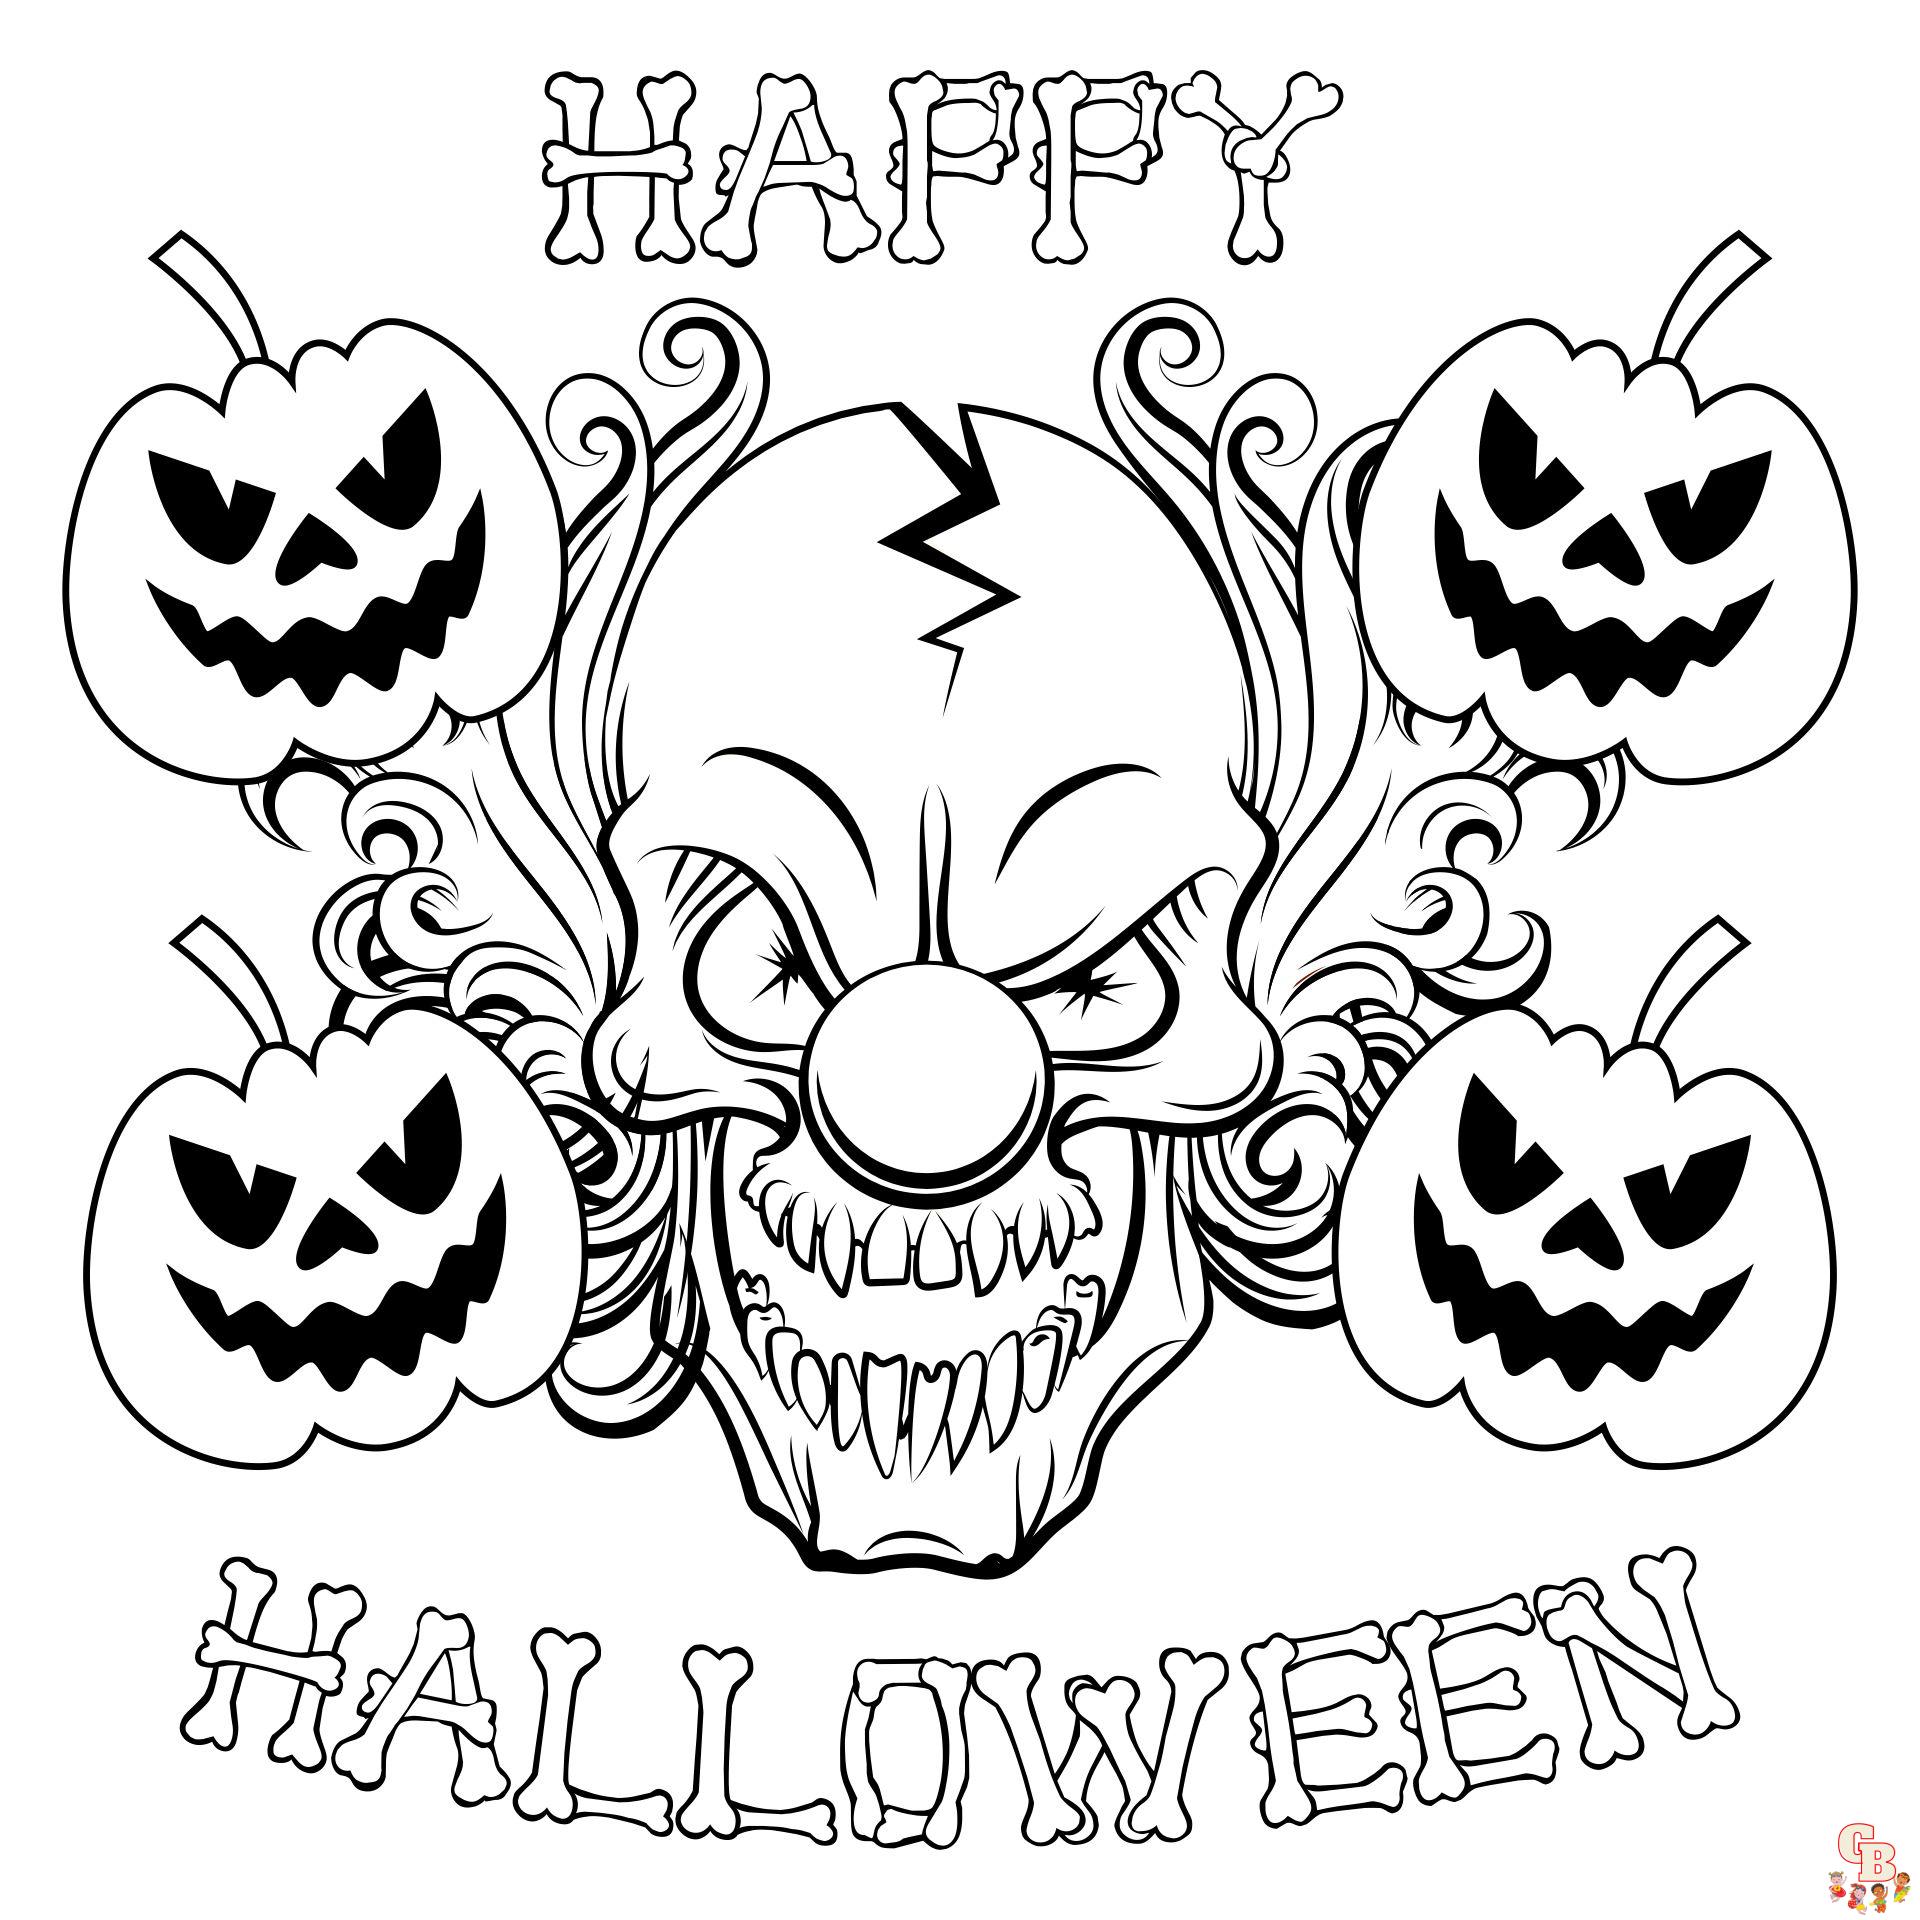 Colorindo o Halloween: Desenhos Assustadores para sua Diversão!